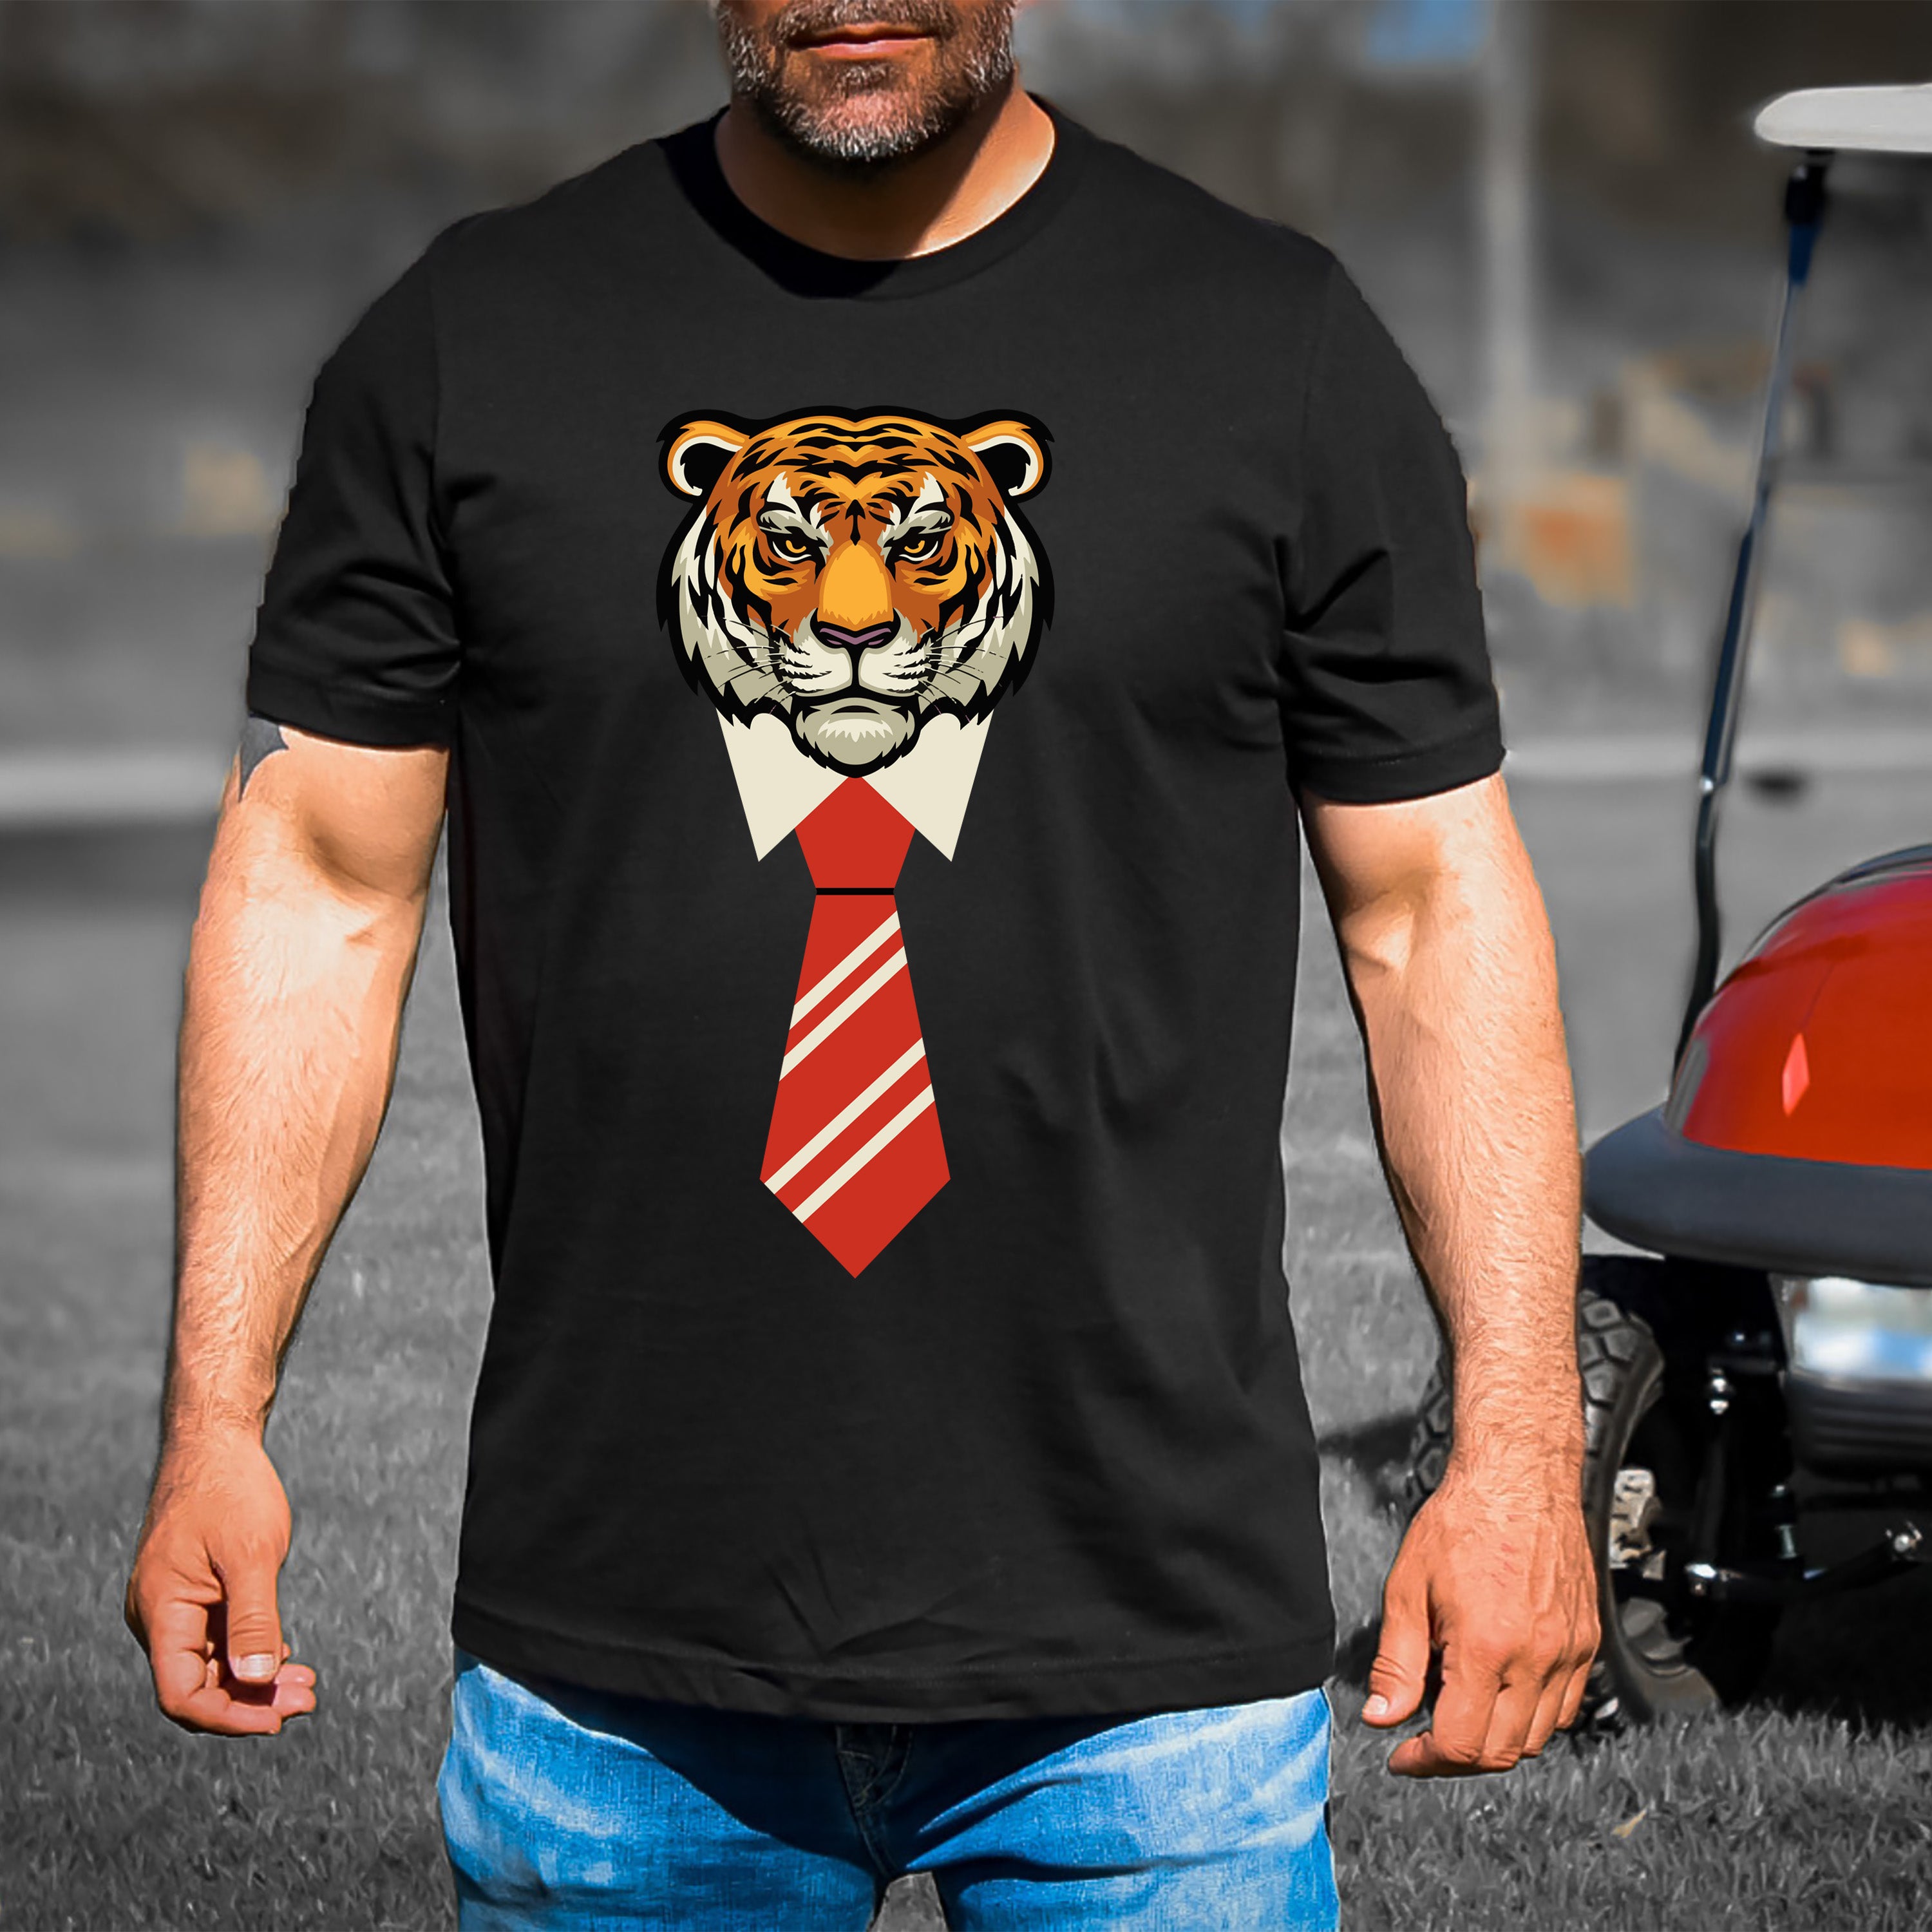 Tiger With Tie - Men's Tee